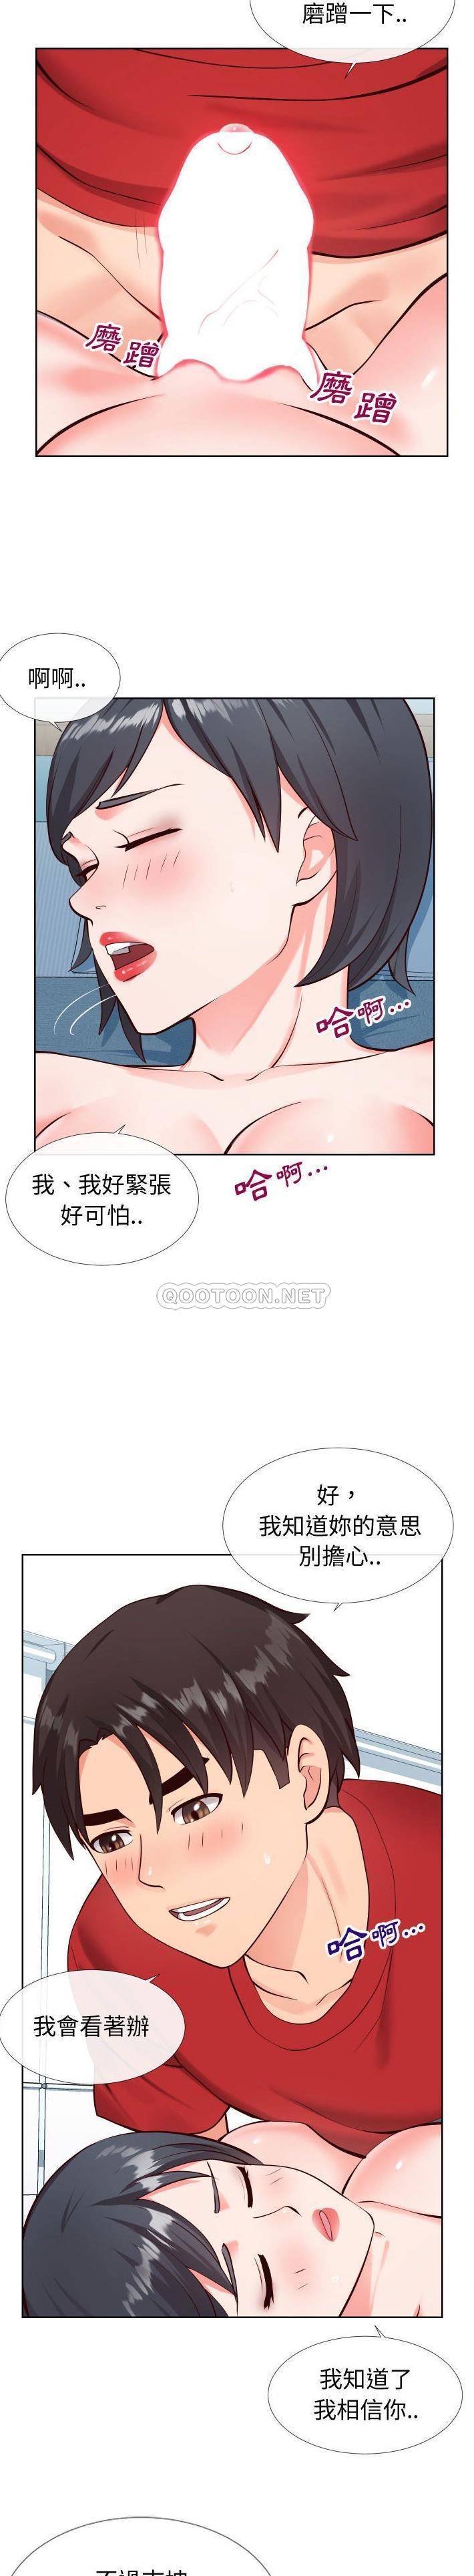 韩国污漫画 偶然同住/同一屋簷 第12话 5